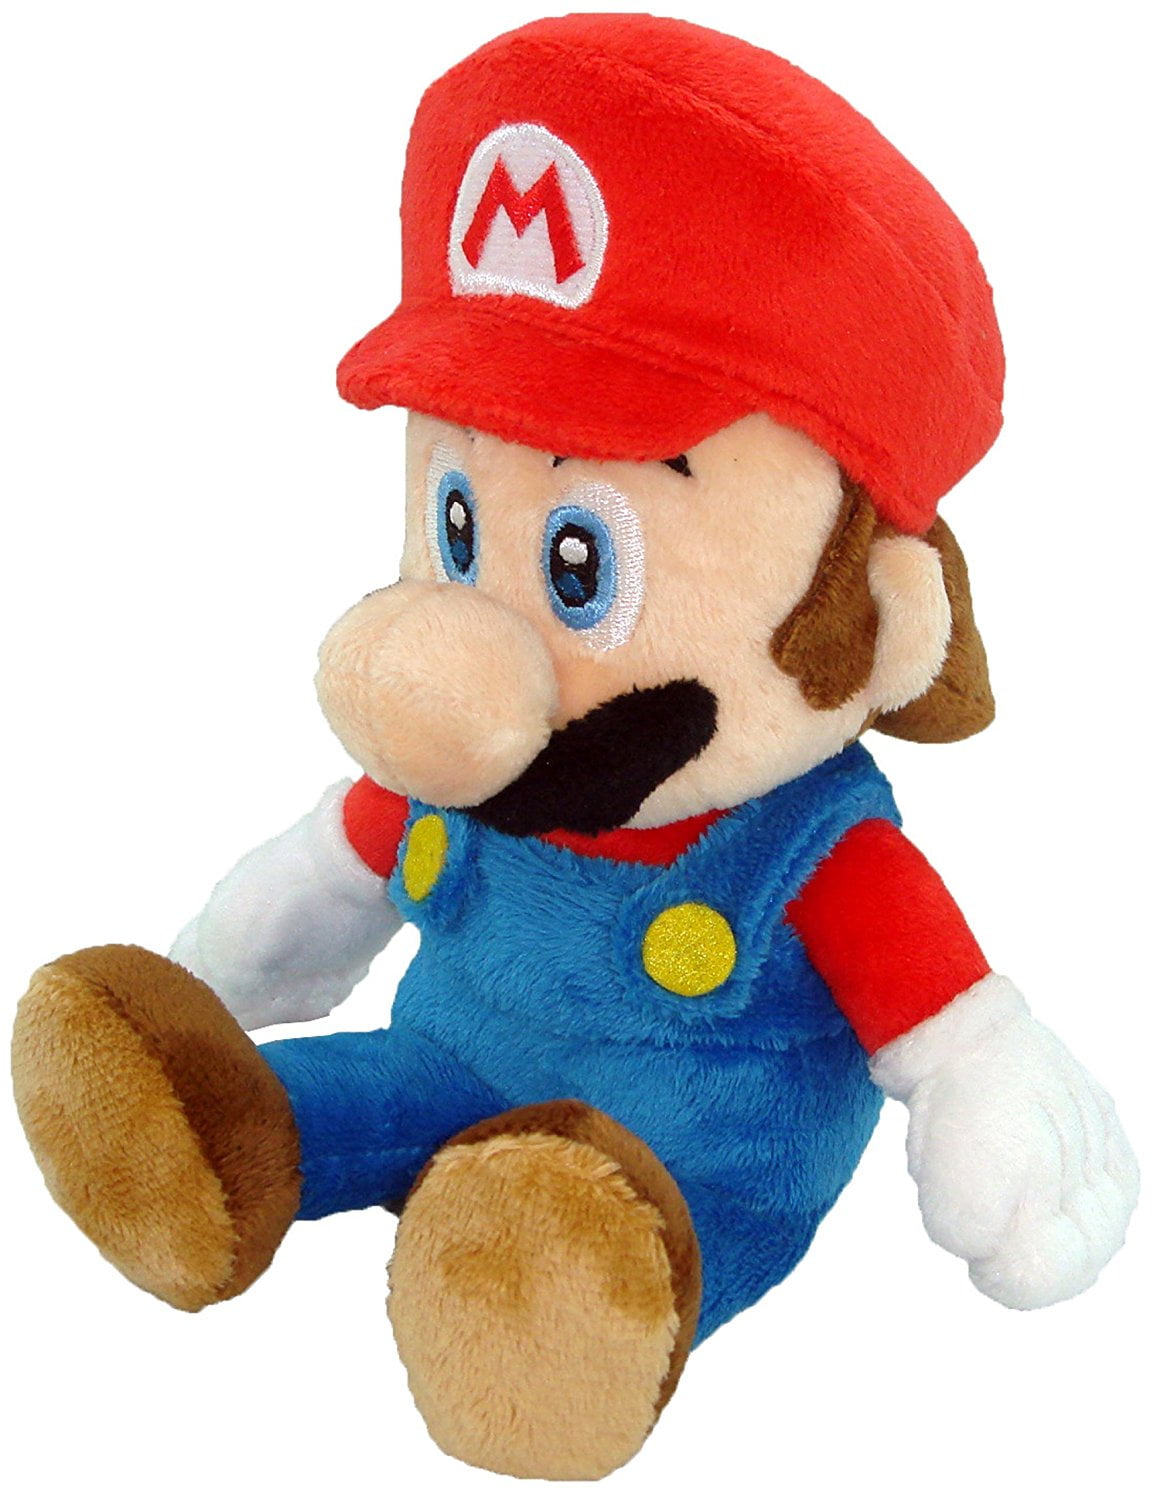 Super Mario Bros 8" Yoshi Plush Flower Mushroom Toy Cute Teddy New & Sealed 